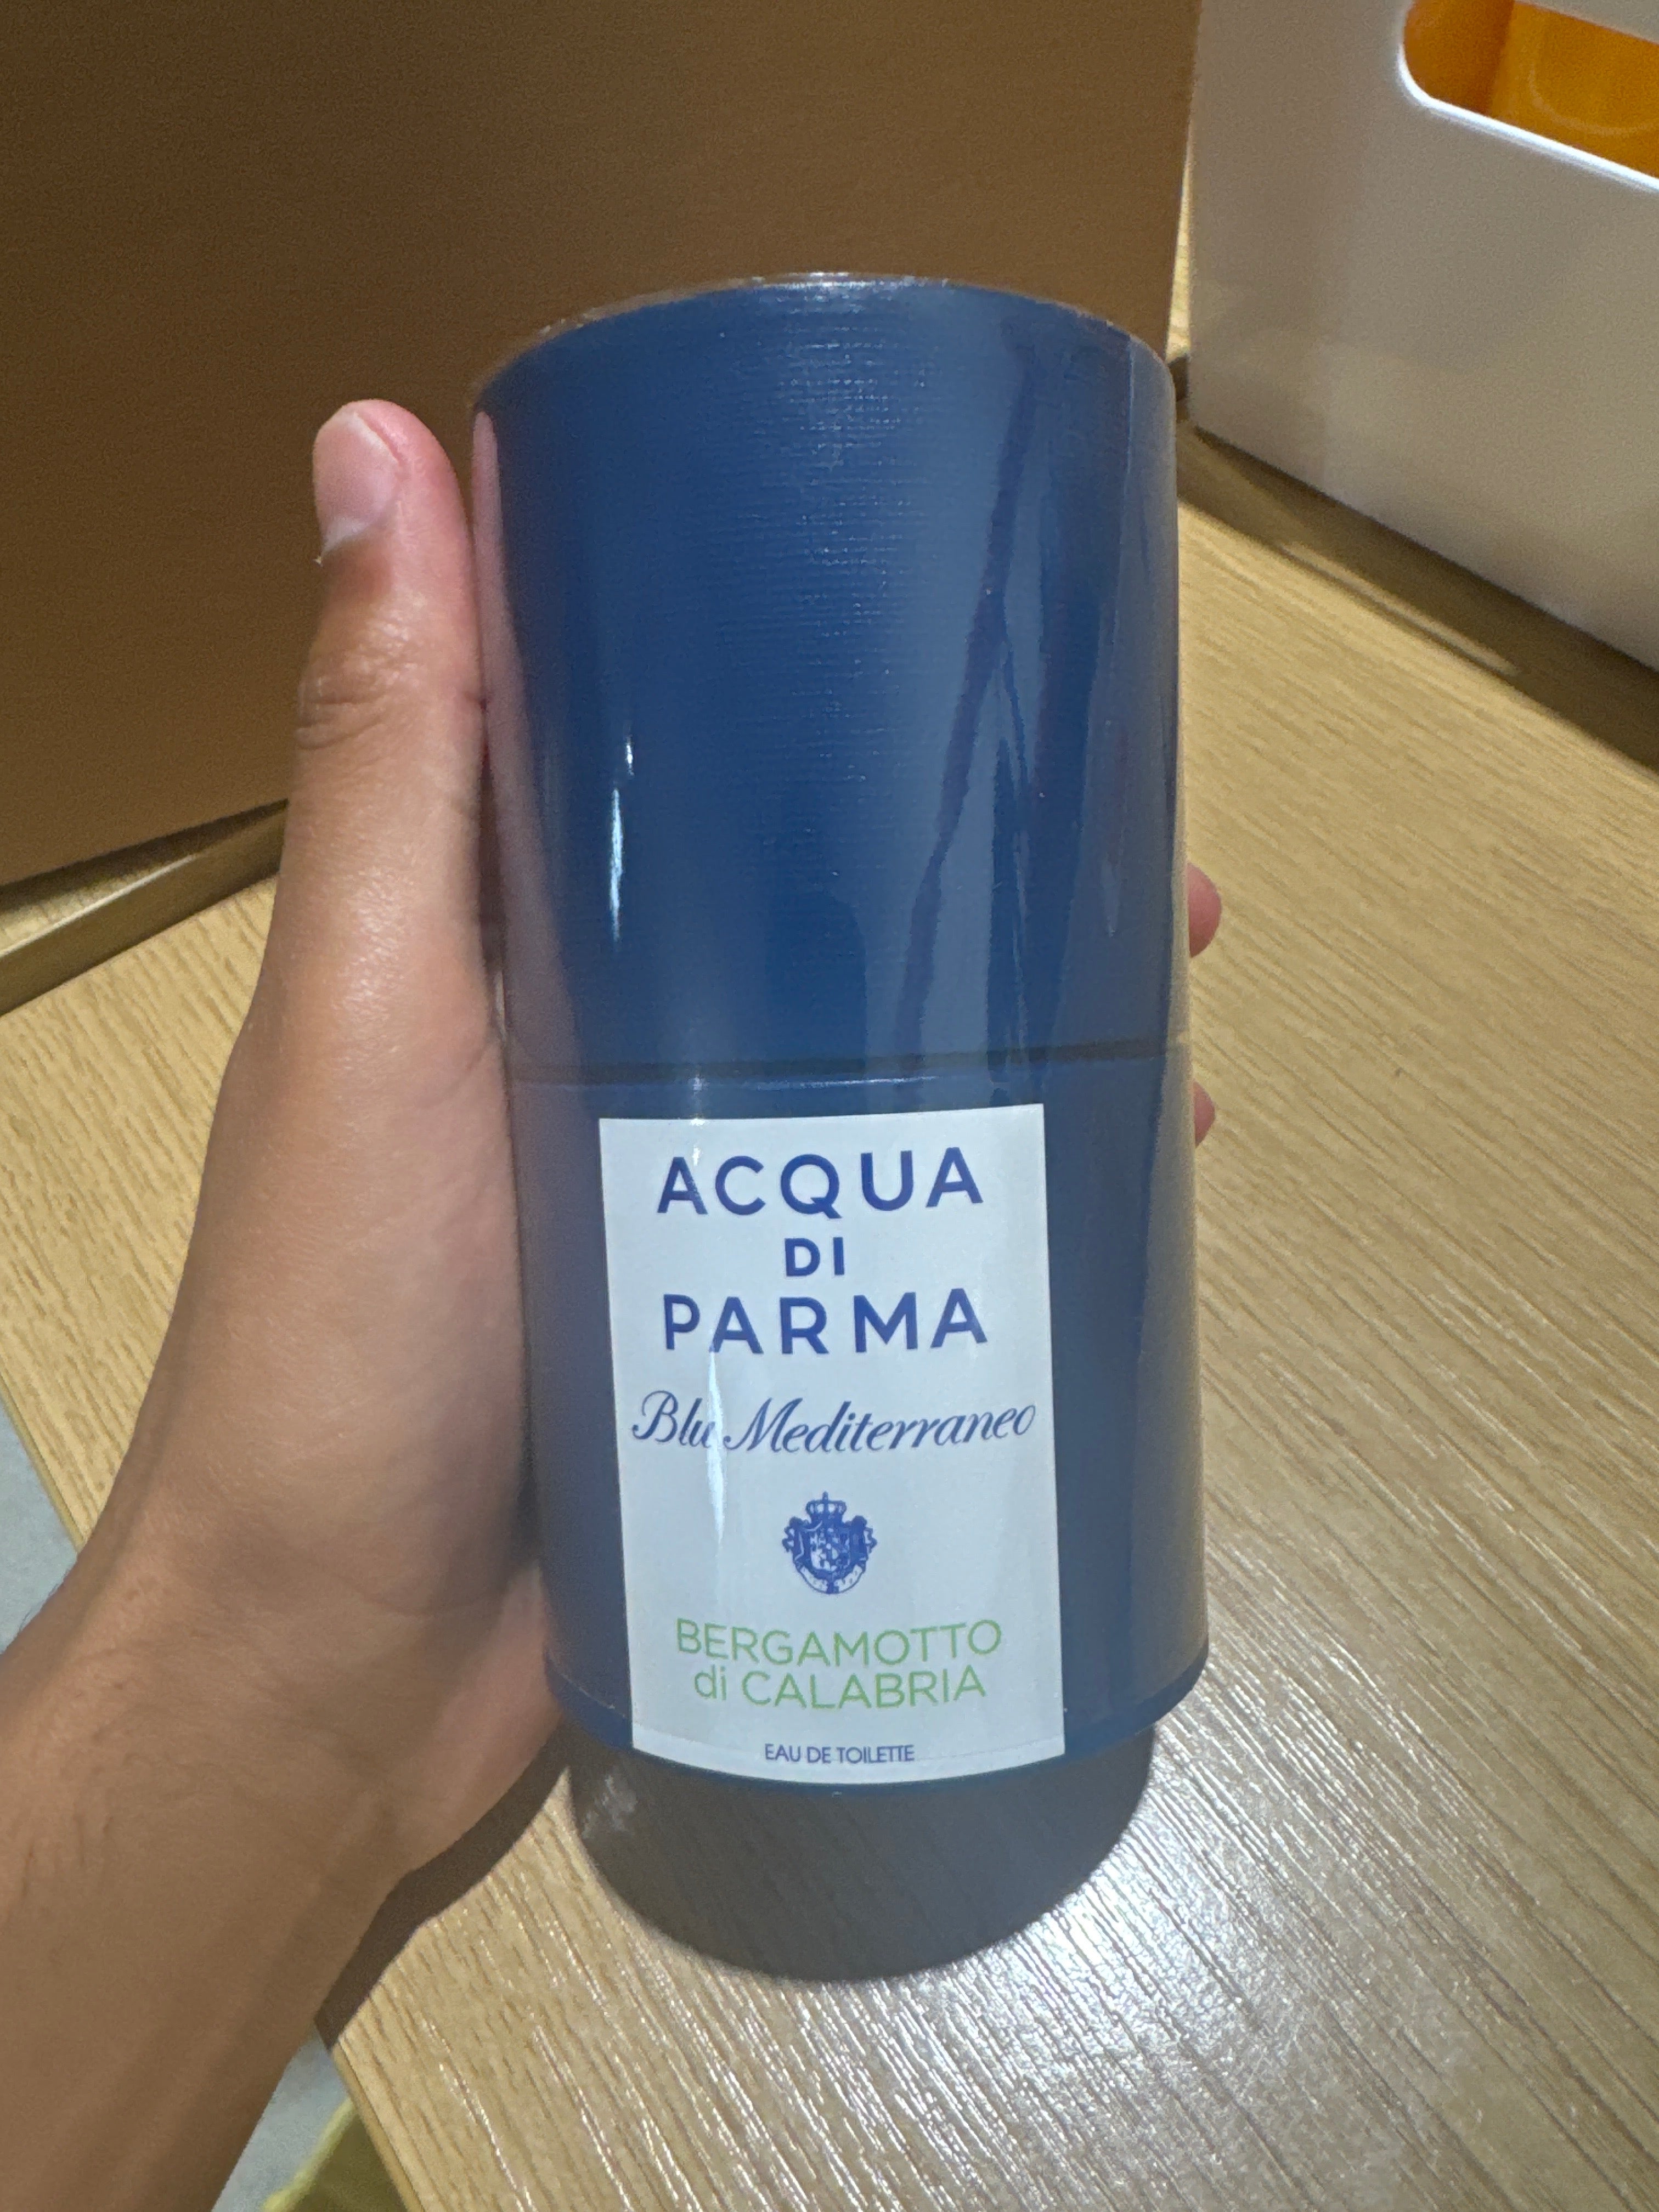 Acqua Di Parma Blu Mediterraneo - Bergamotto Di Calabria Eau de Toilette Natural Spray